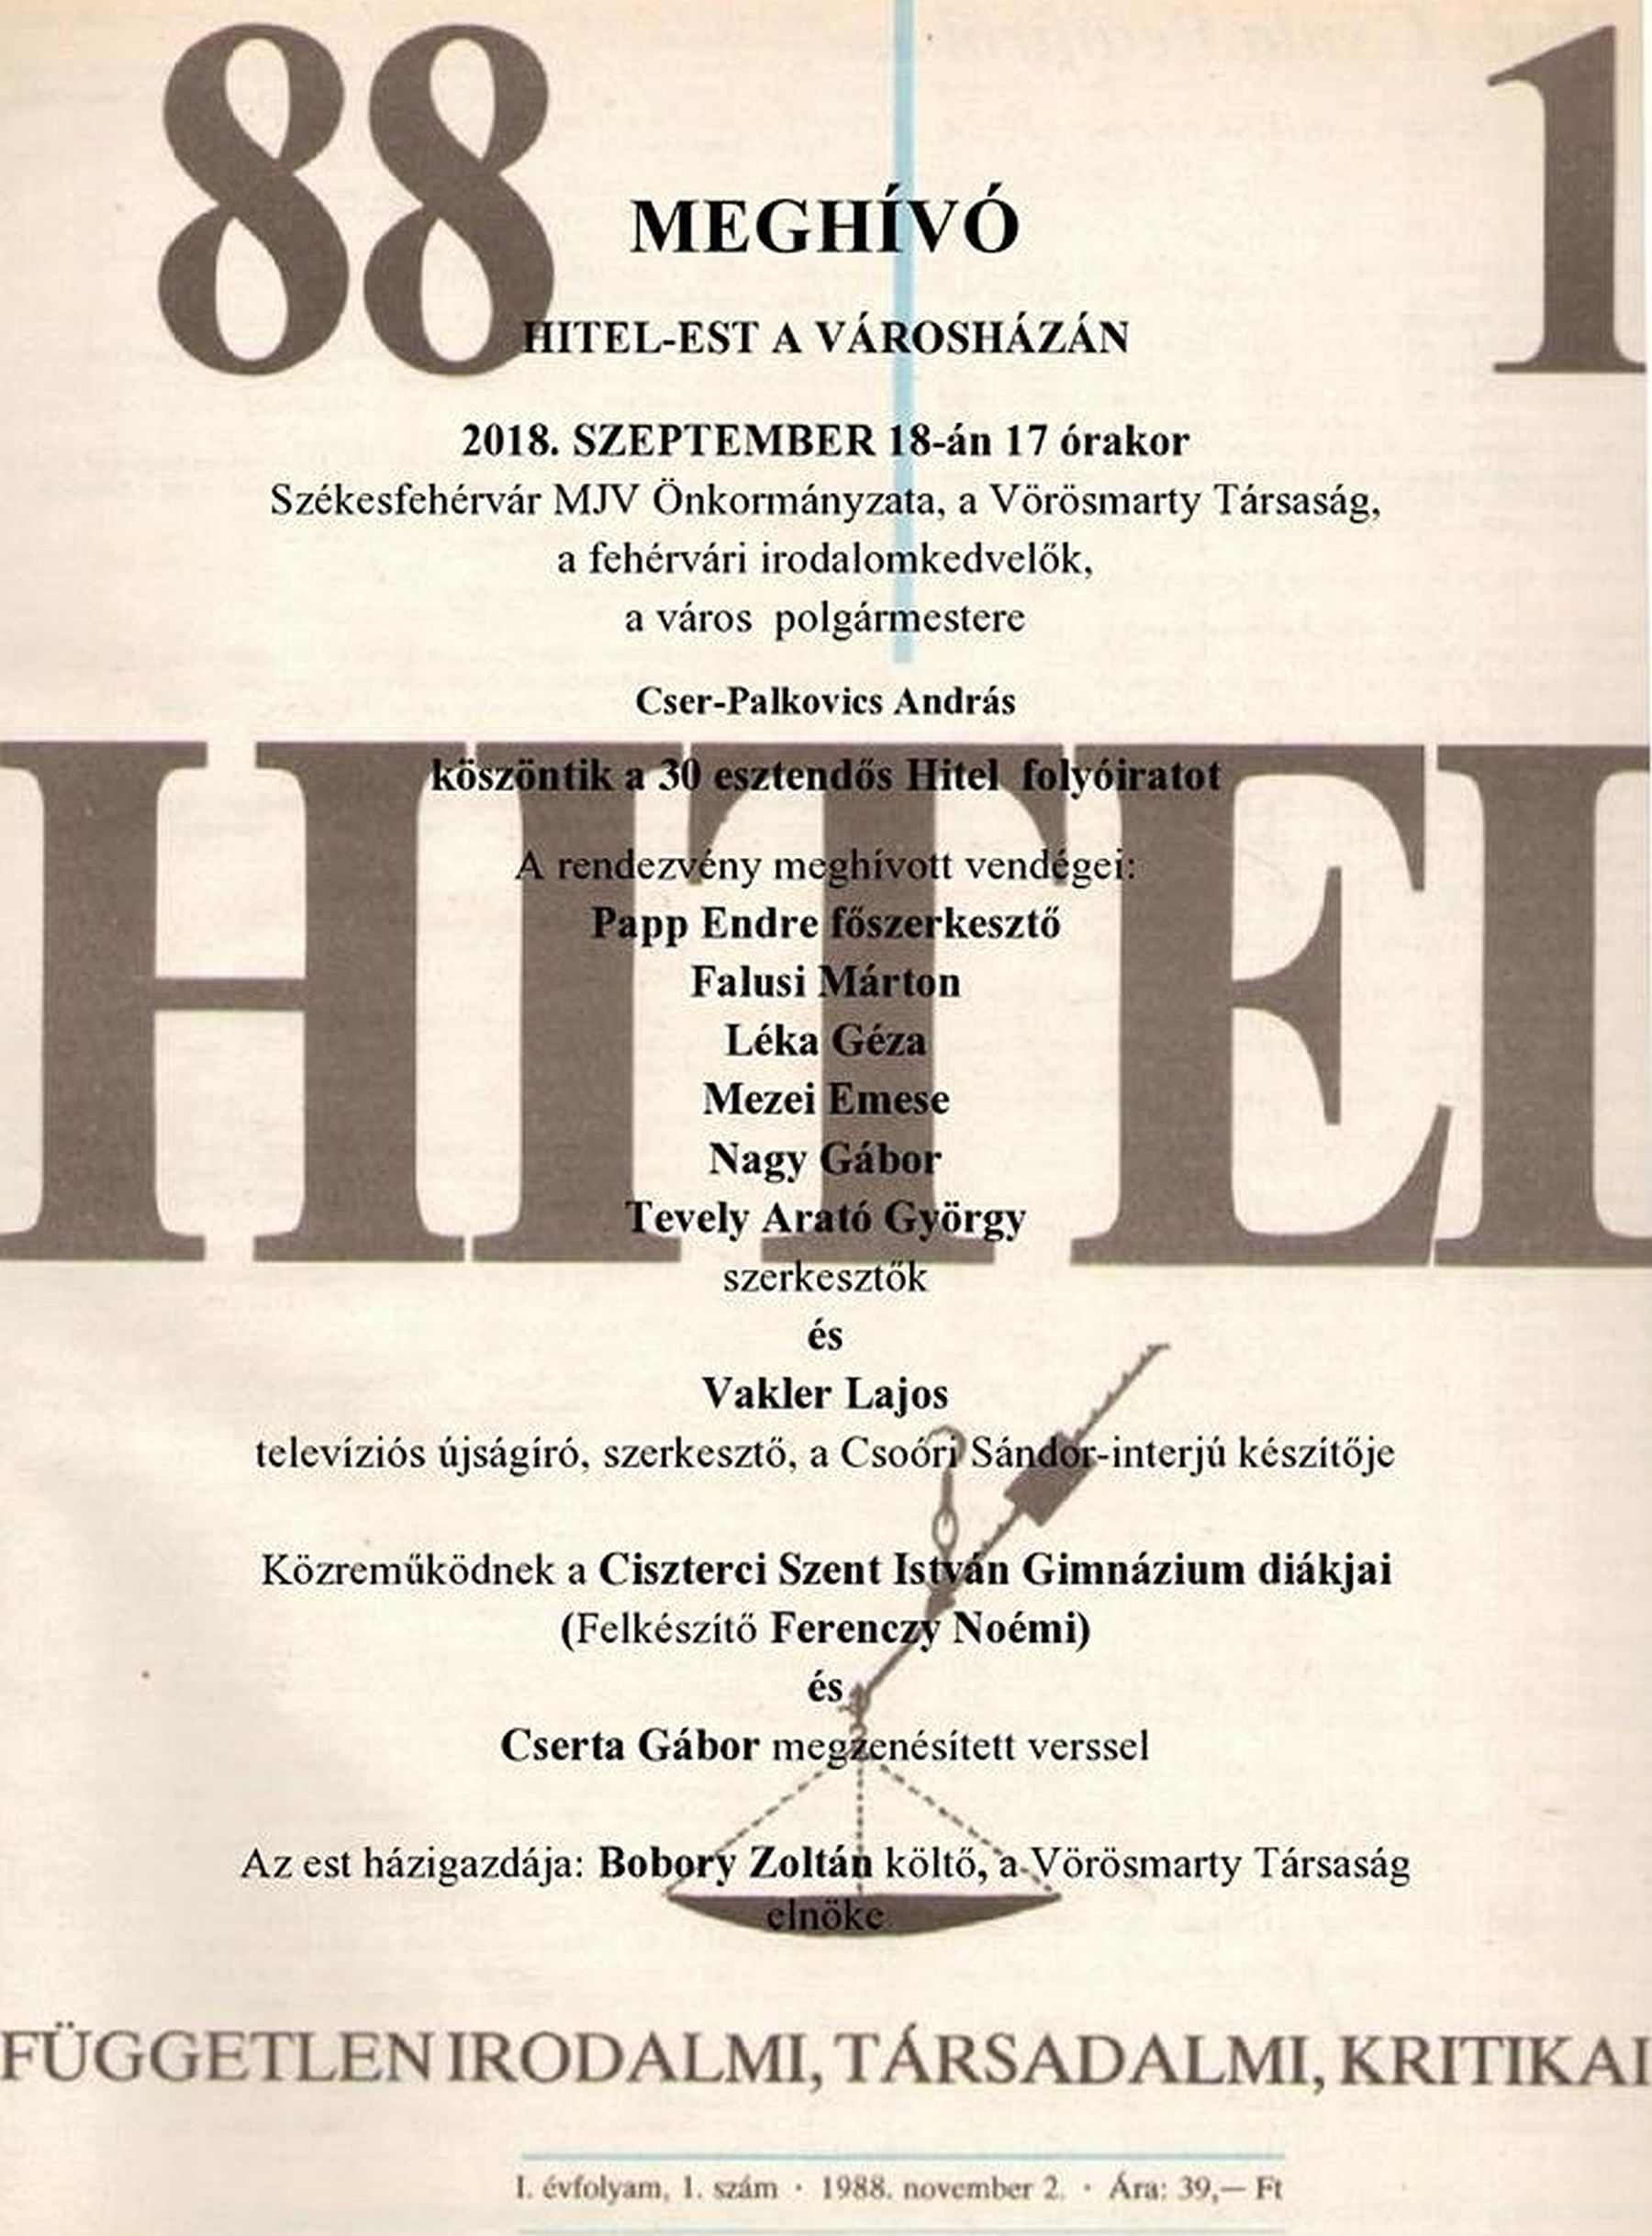 HITEL-est lesz a Városházán kedden, a folyóirat fennállásának 30. évfordulóján